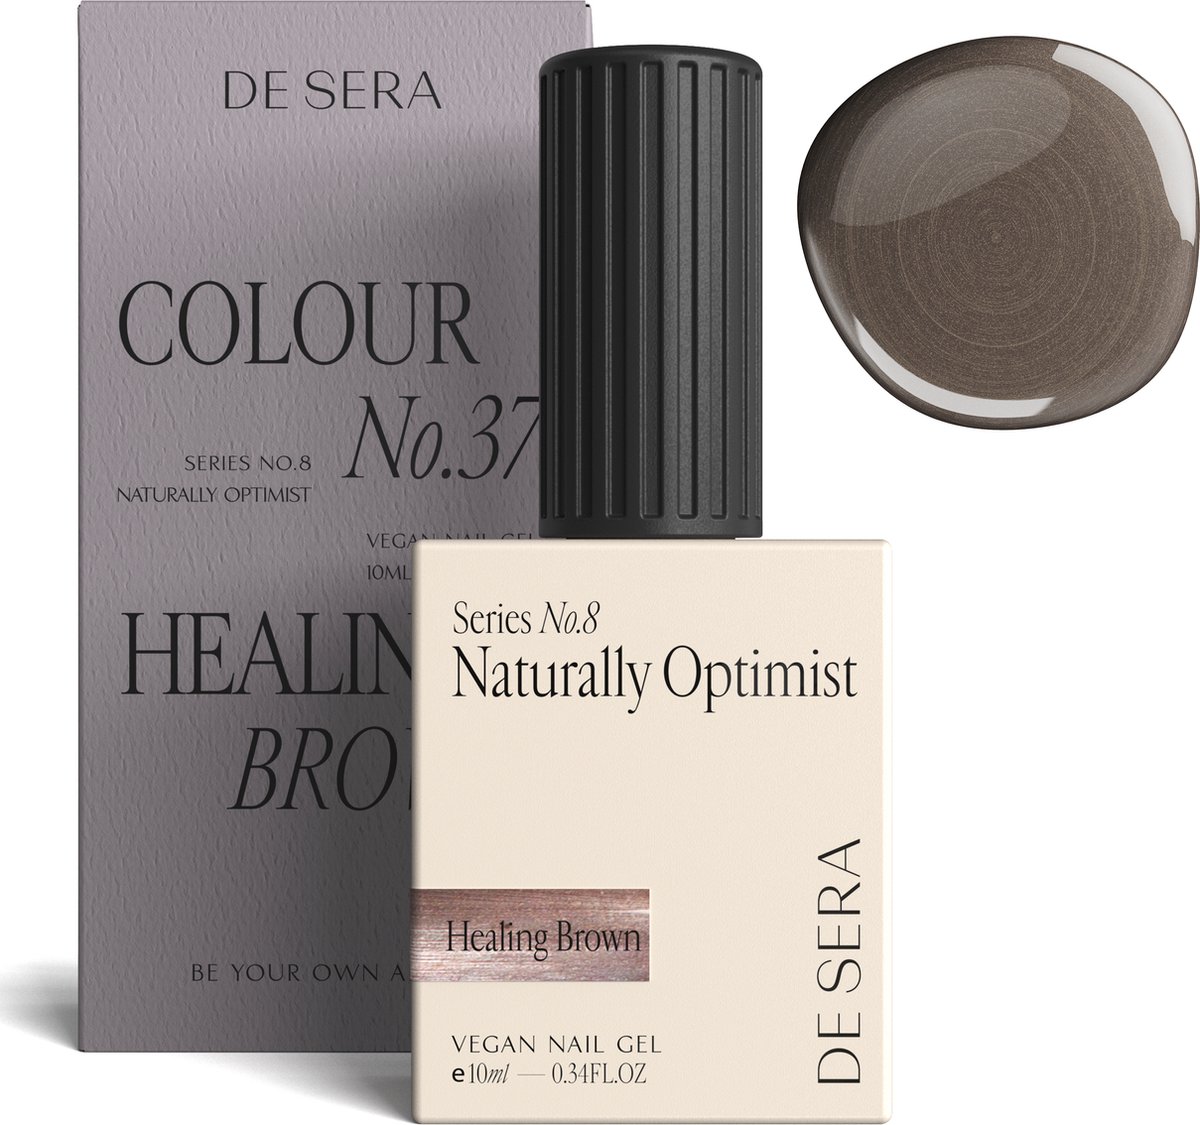 De Sera Gellak - Glitter Bruine Gel Nagellak - Bruin - 10ML - Colour No. 37 Healing Brown